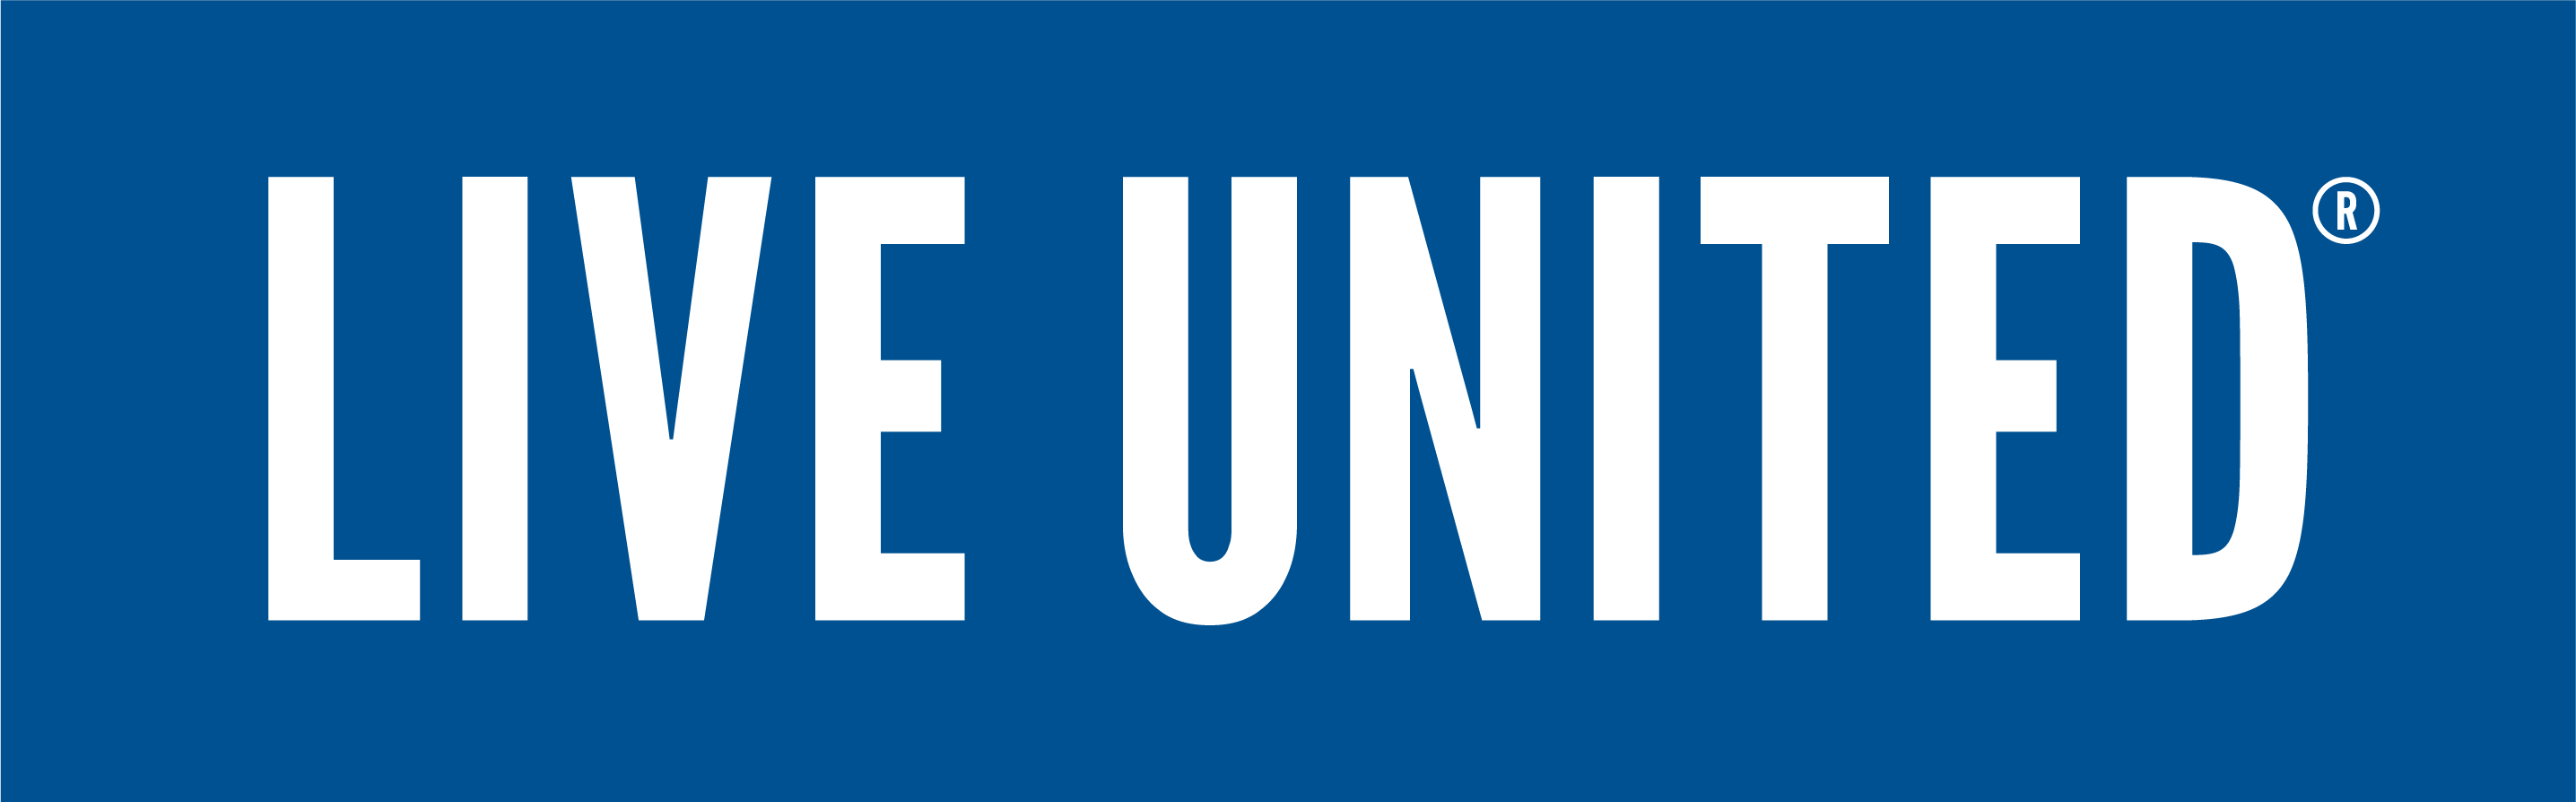 Blue United Logo - Logos, Videos, Photo Way of San Antonio and Bexar County